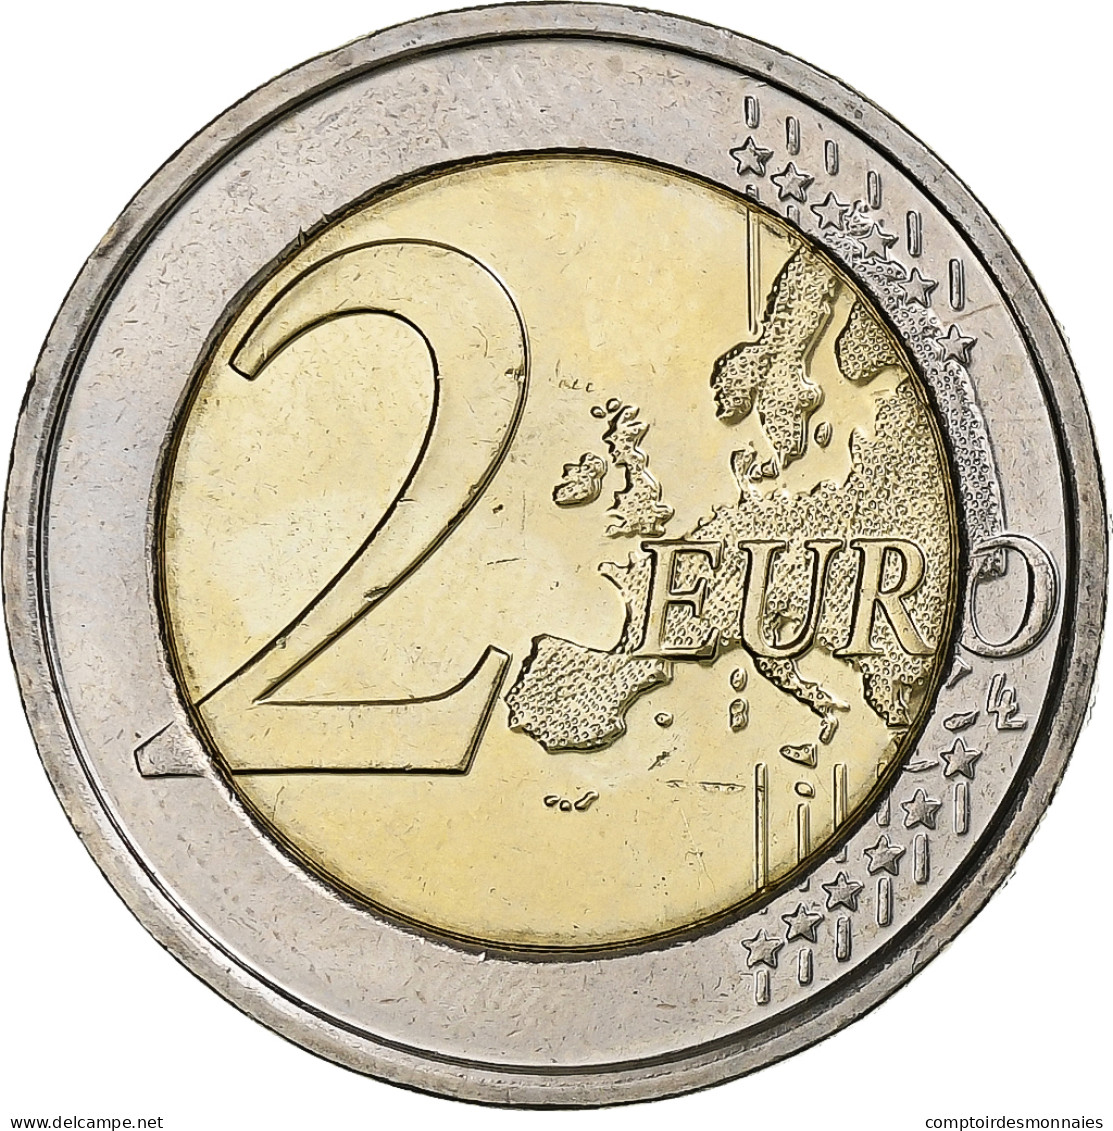 Belgique, 2 Euro, 2013, INSTITUT MÉTÉOROLOGIQUE, SPL, Bimétallique - België